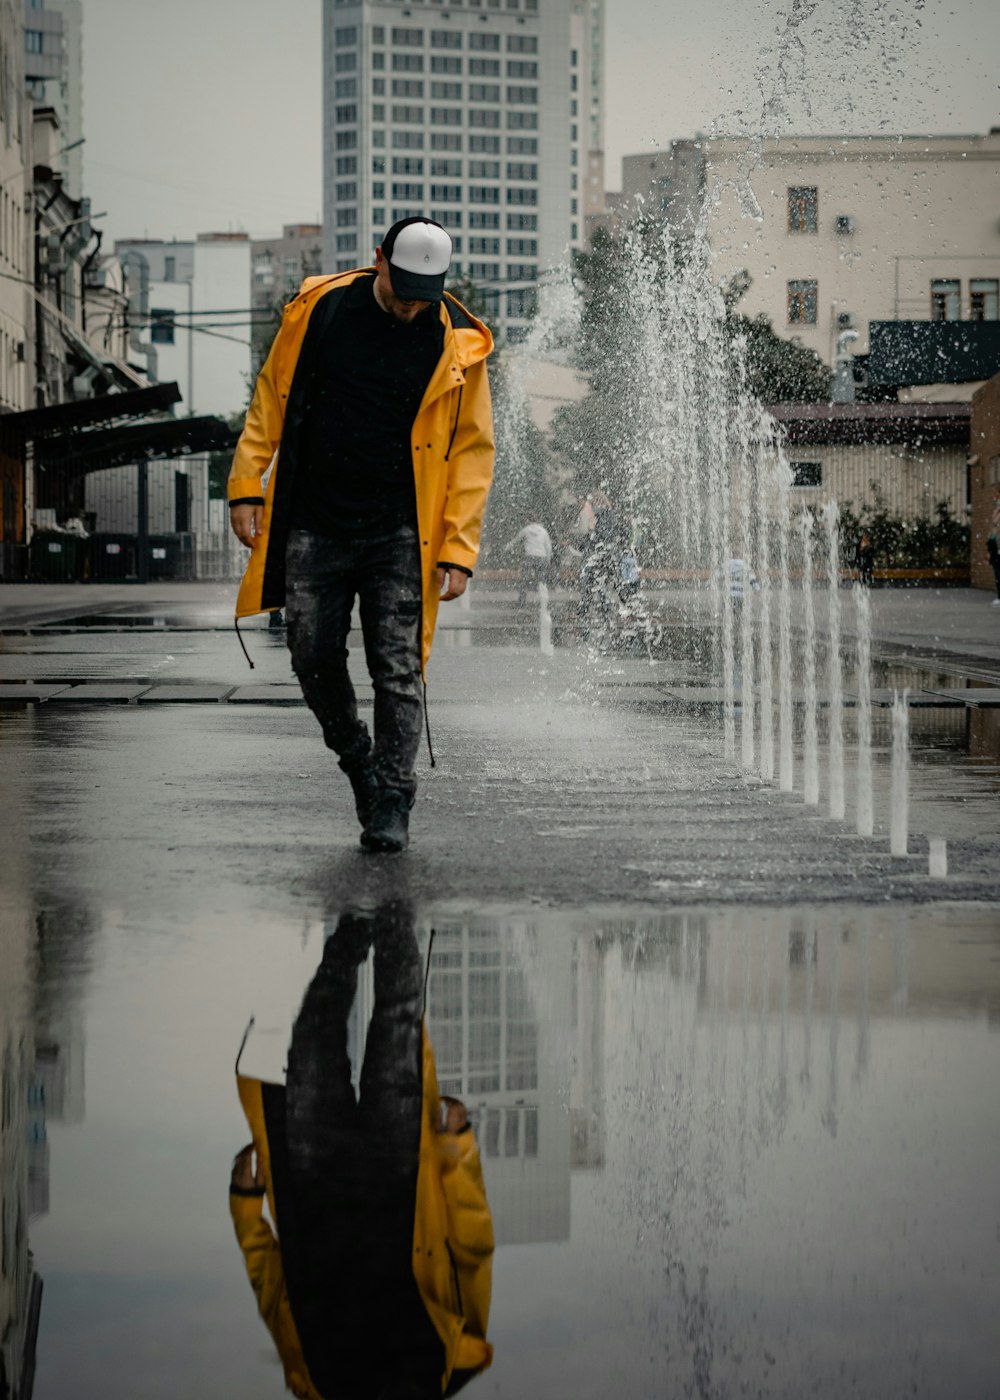 Mann in gelber Jacke und schwarzer Hose steht tagsüber am Wasserbrunnen